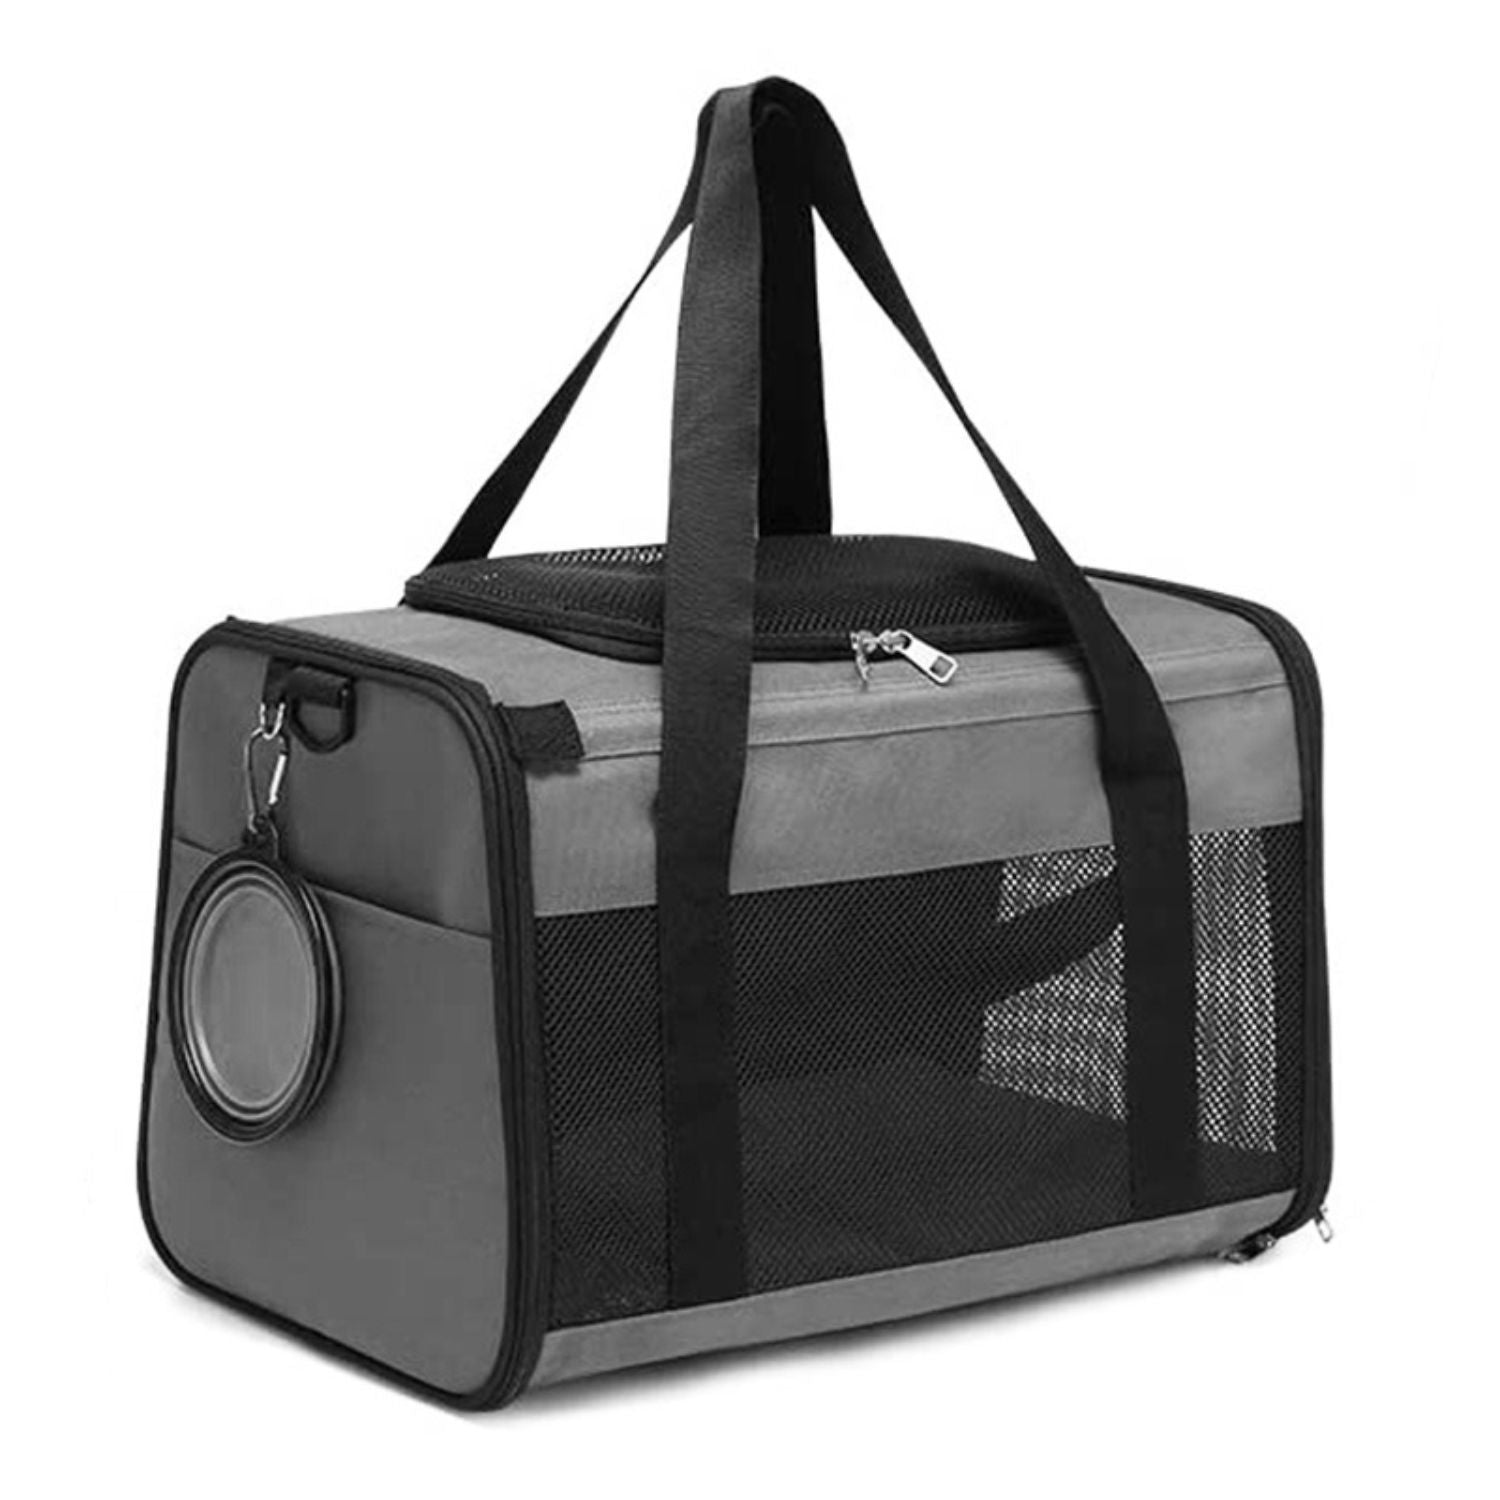 Floofi Portable Pet Carrier-M Size (Grey)